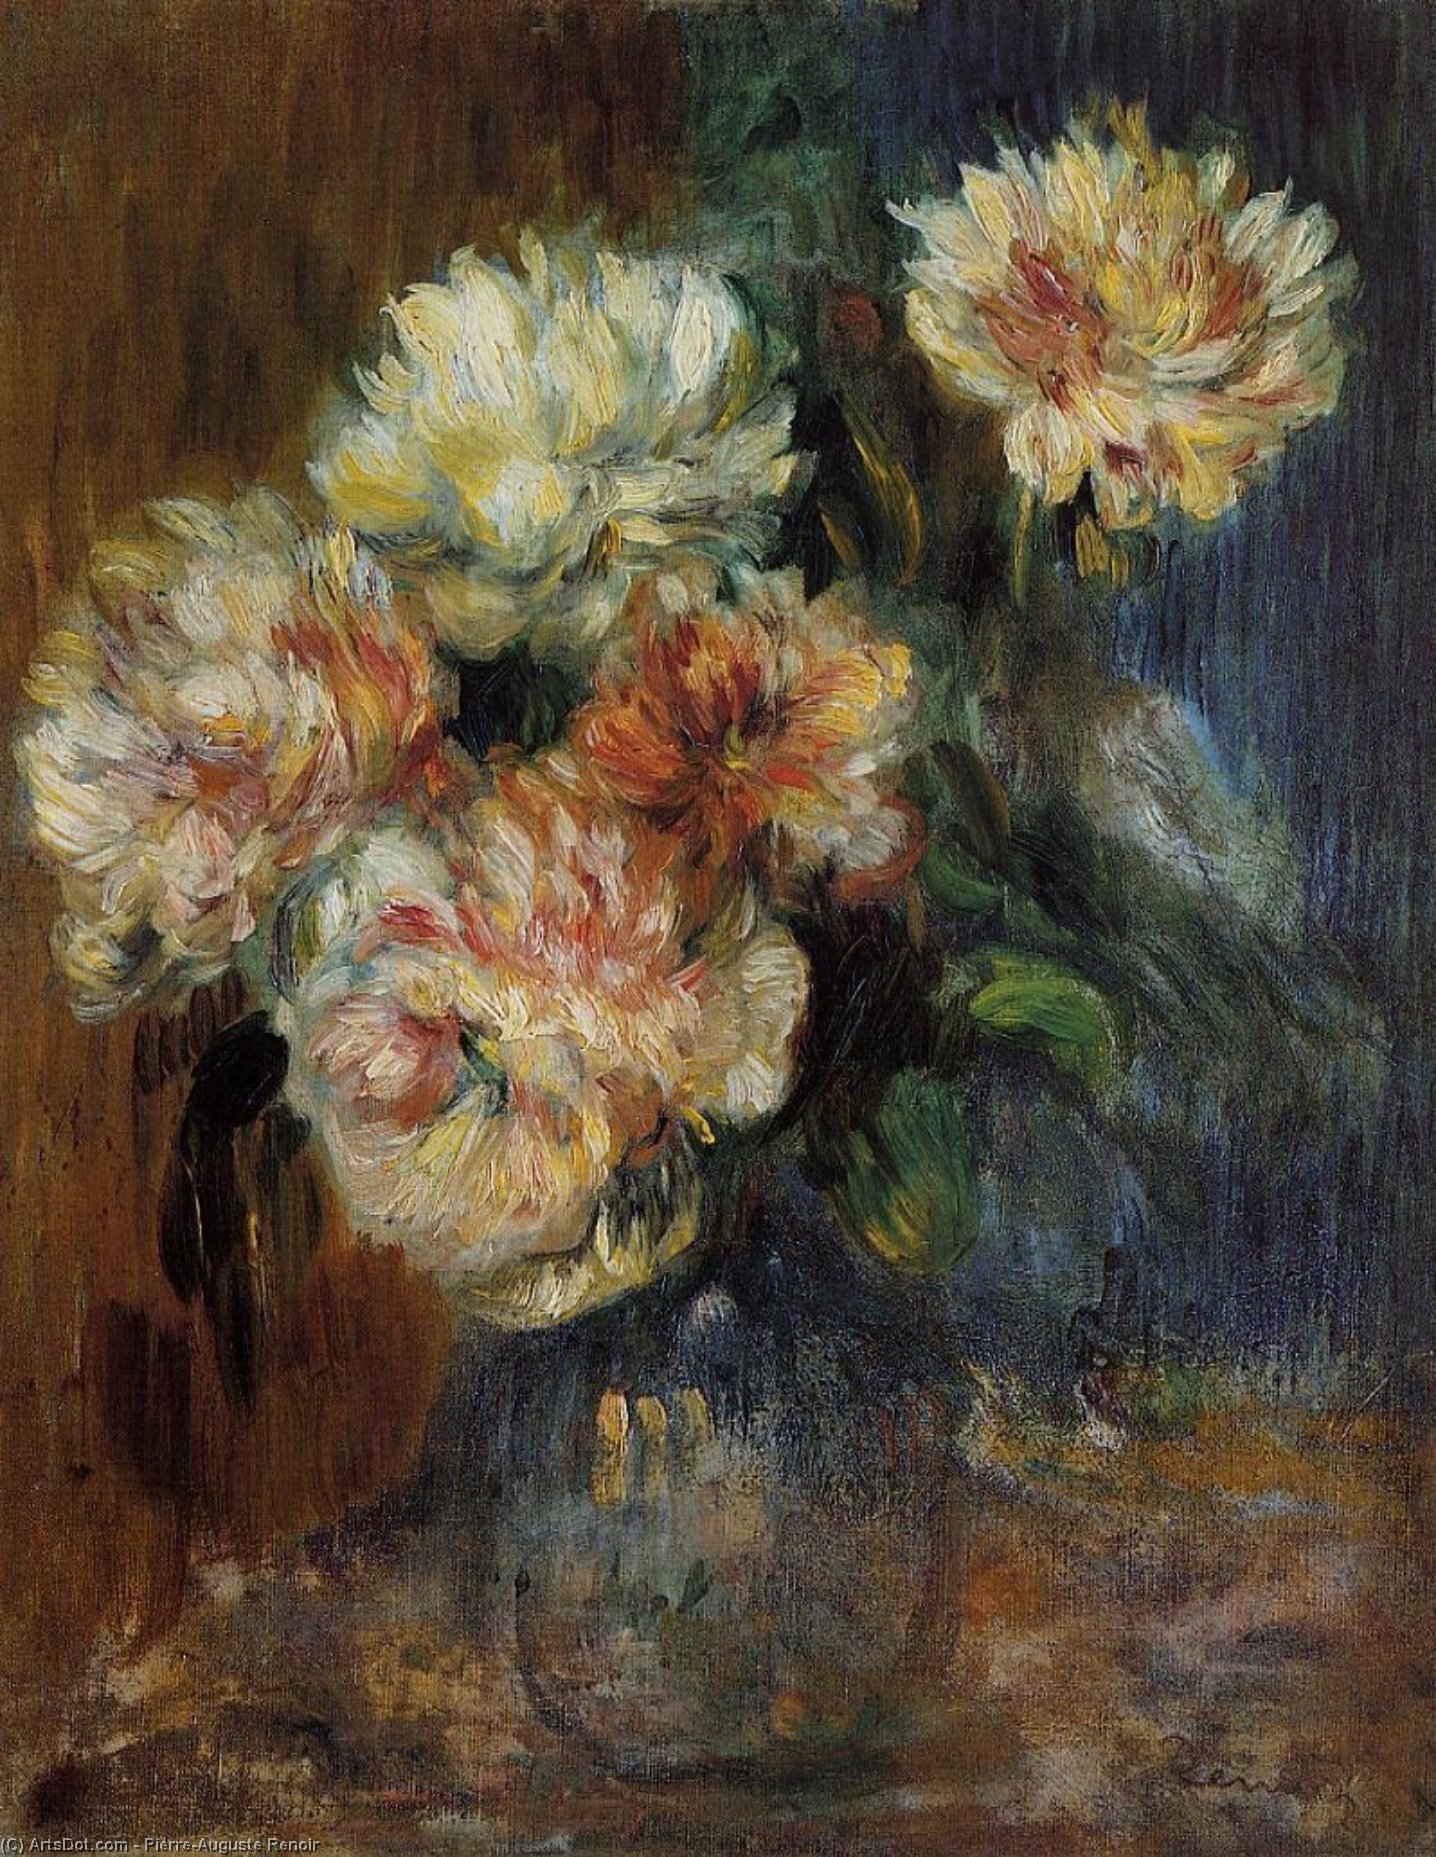 WikiOO.org - Encyclopedia of Fine Arts - Lukisan, Artwork Pierre-Auguste Renoir - Vase of Peonies